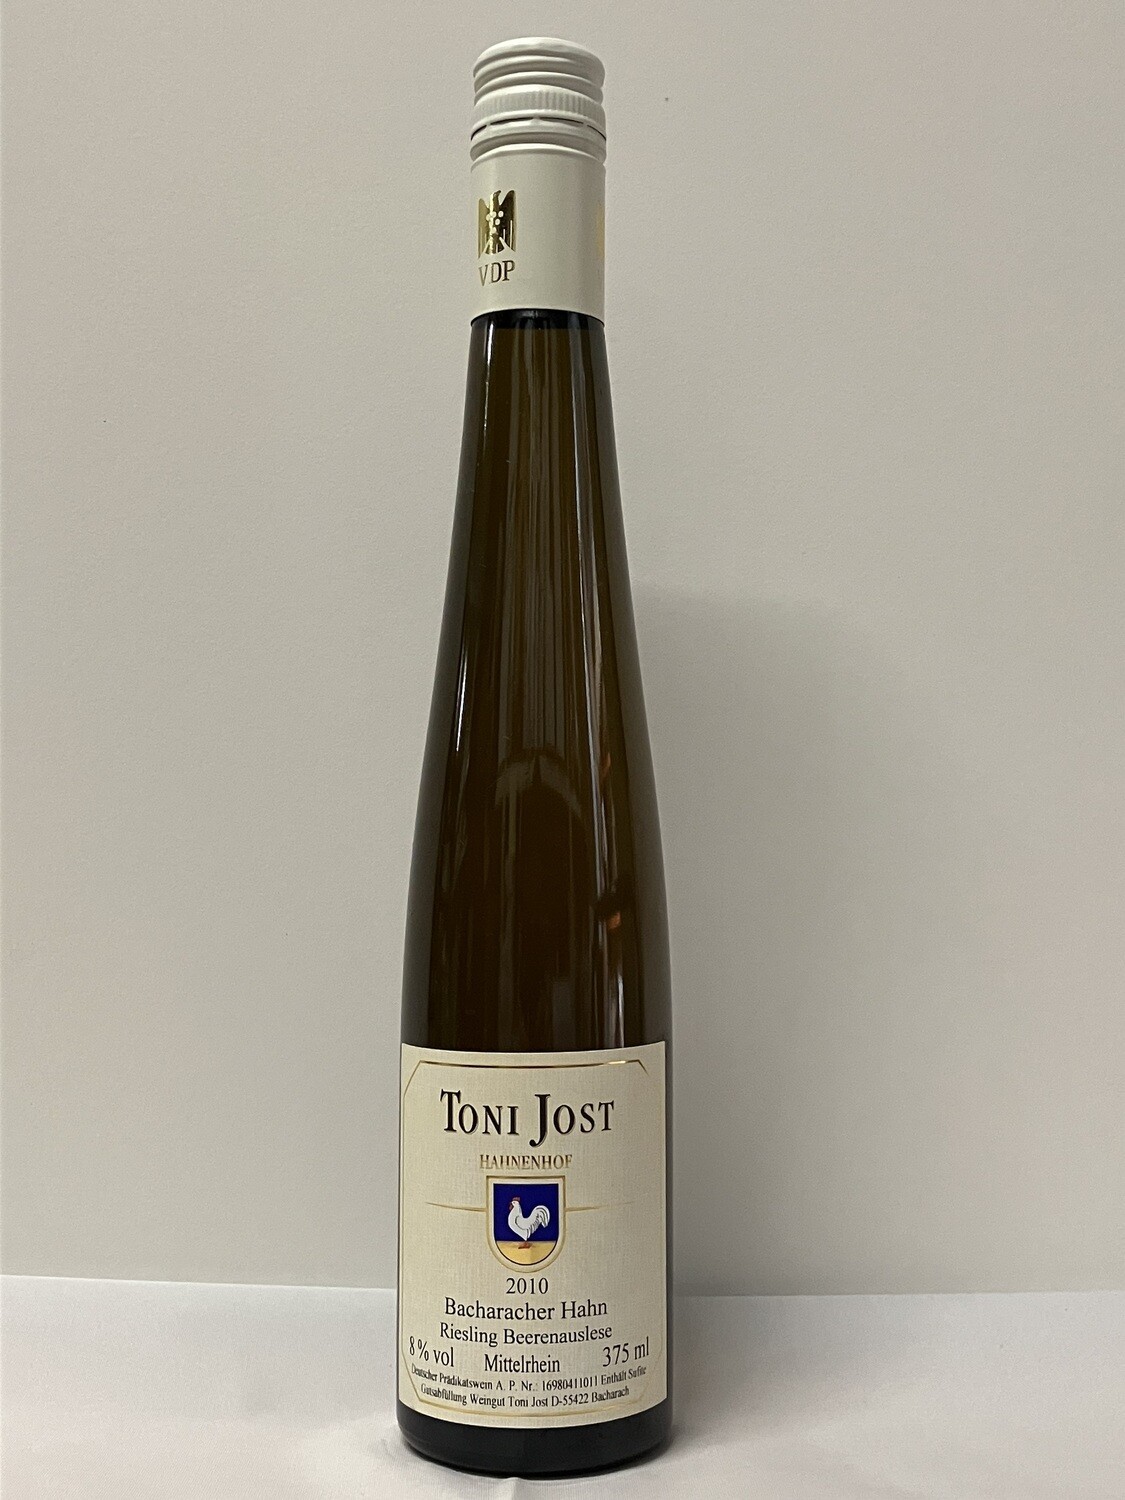 Riesling Beerenauslese 2010 0,375 l Bacharach Hahn-Toni Jost (Mittelrhein)